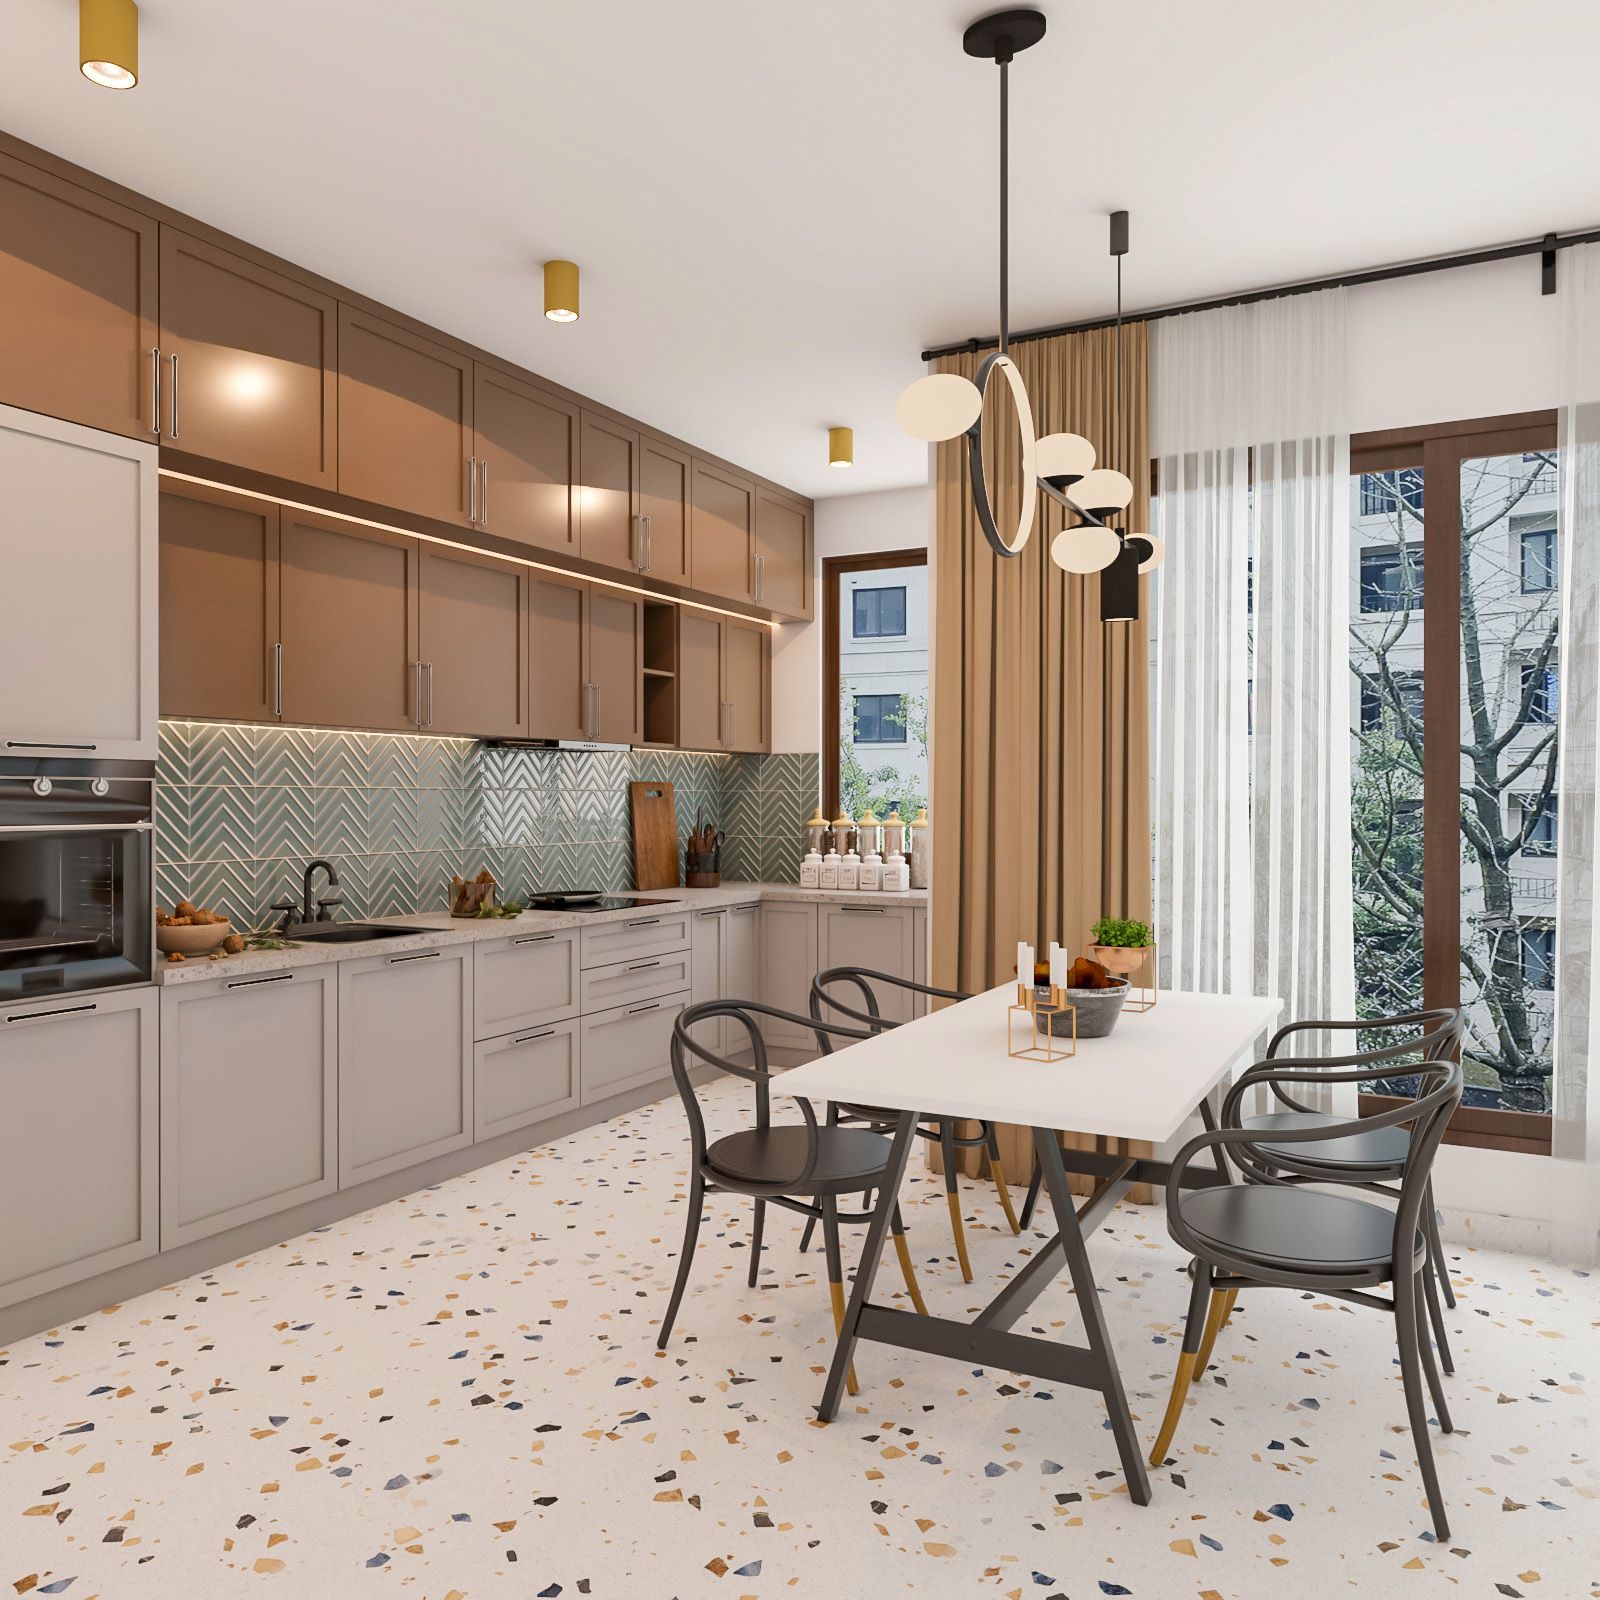 Modern Modular Regalia Open Kitchen Design With Brown And Beige Kitchen Cabinets